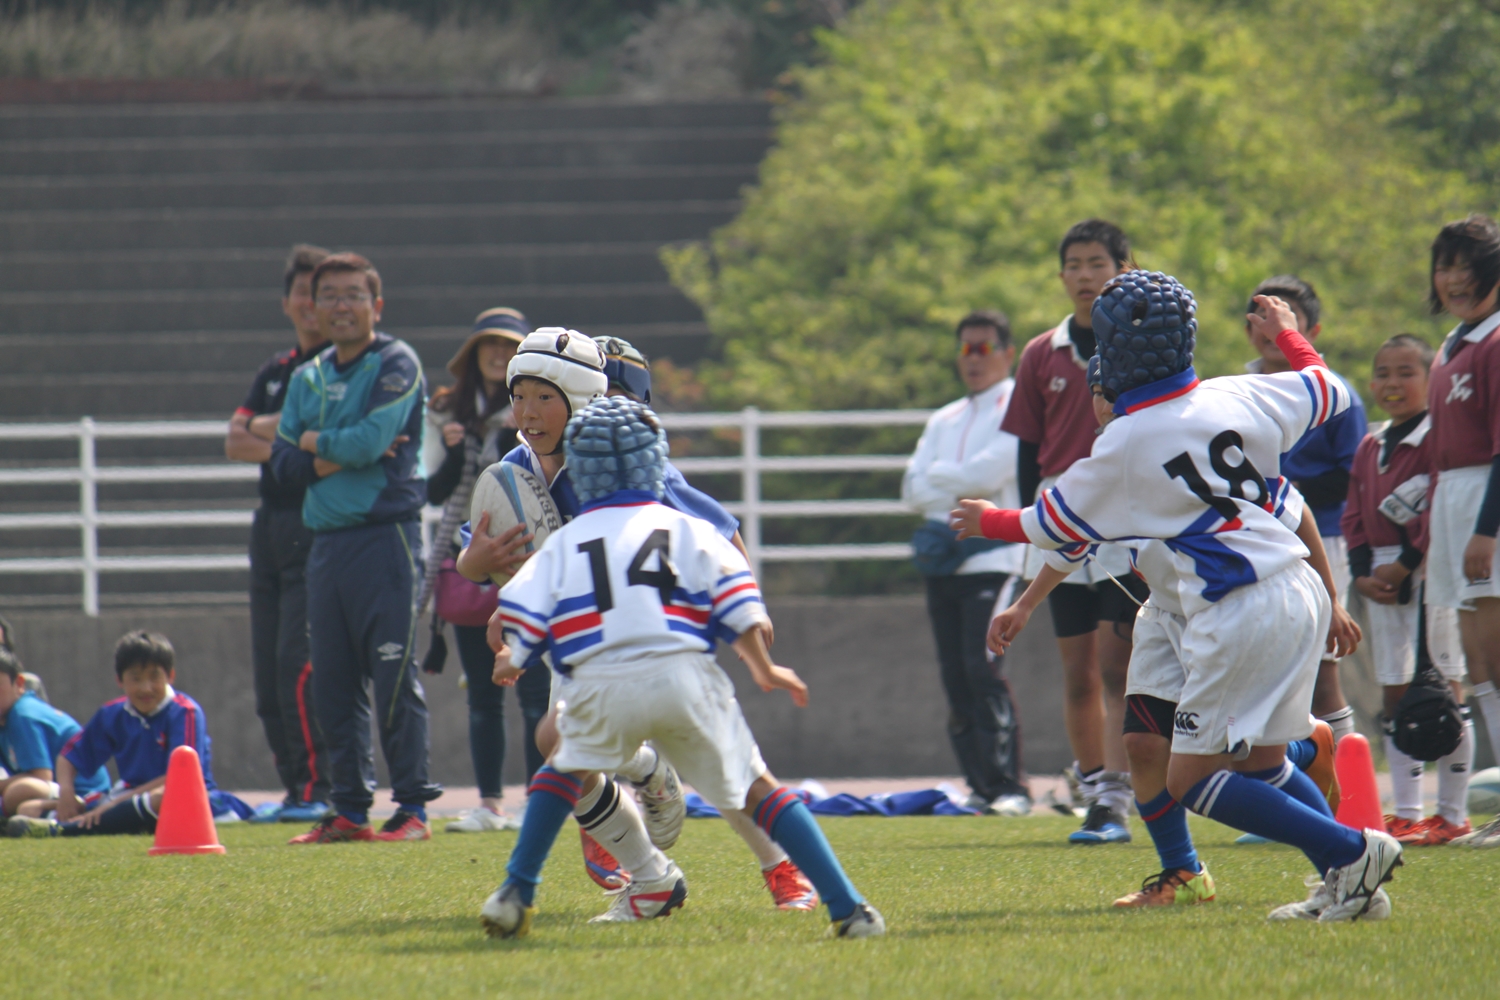 youngwave_kitakyusyu_rugby_school_simonosekikouryu2016053.JPG